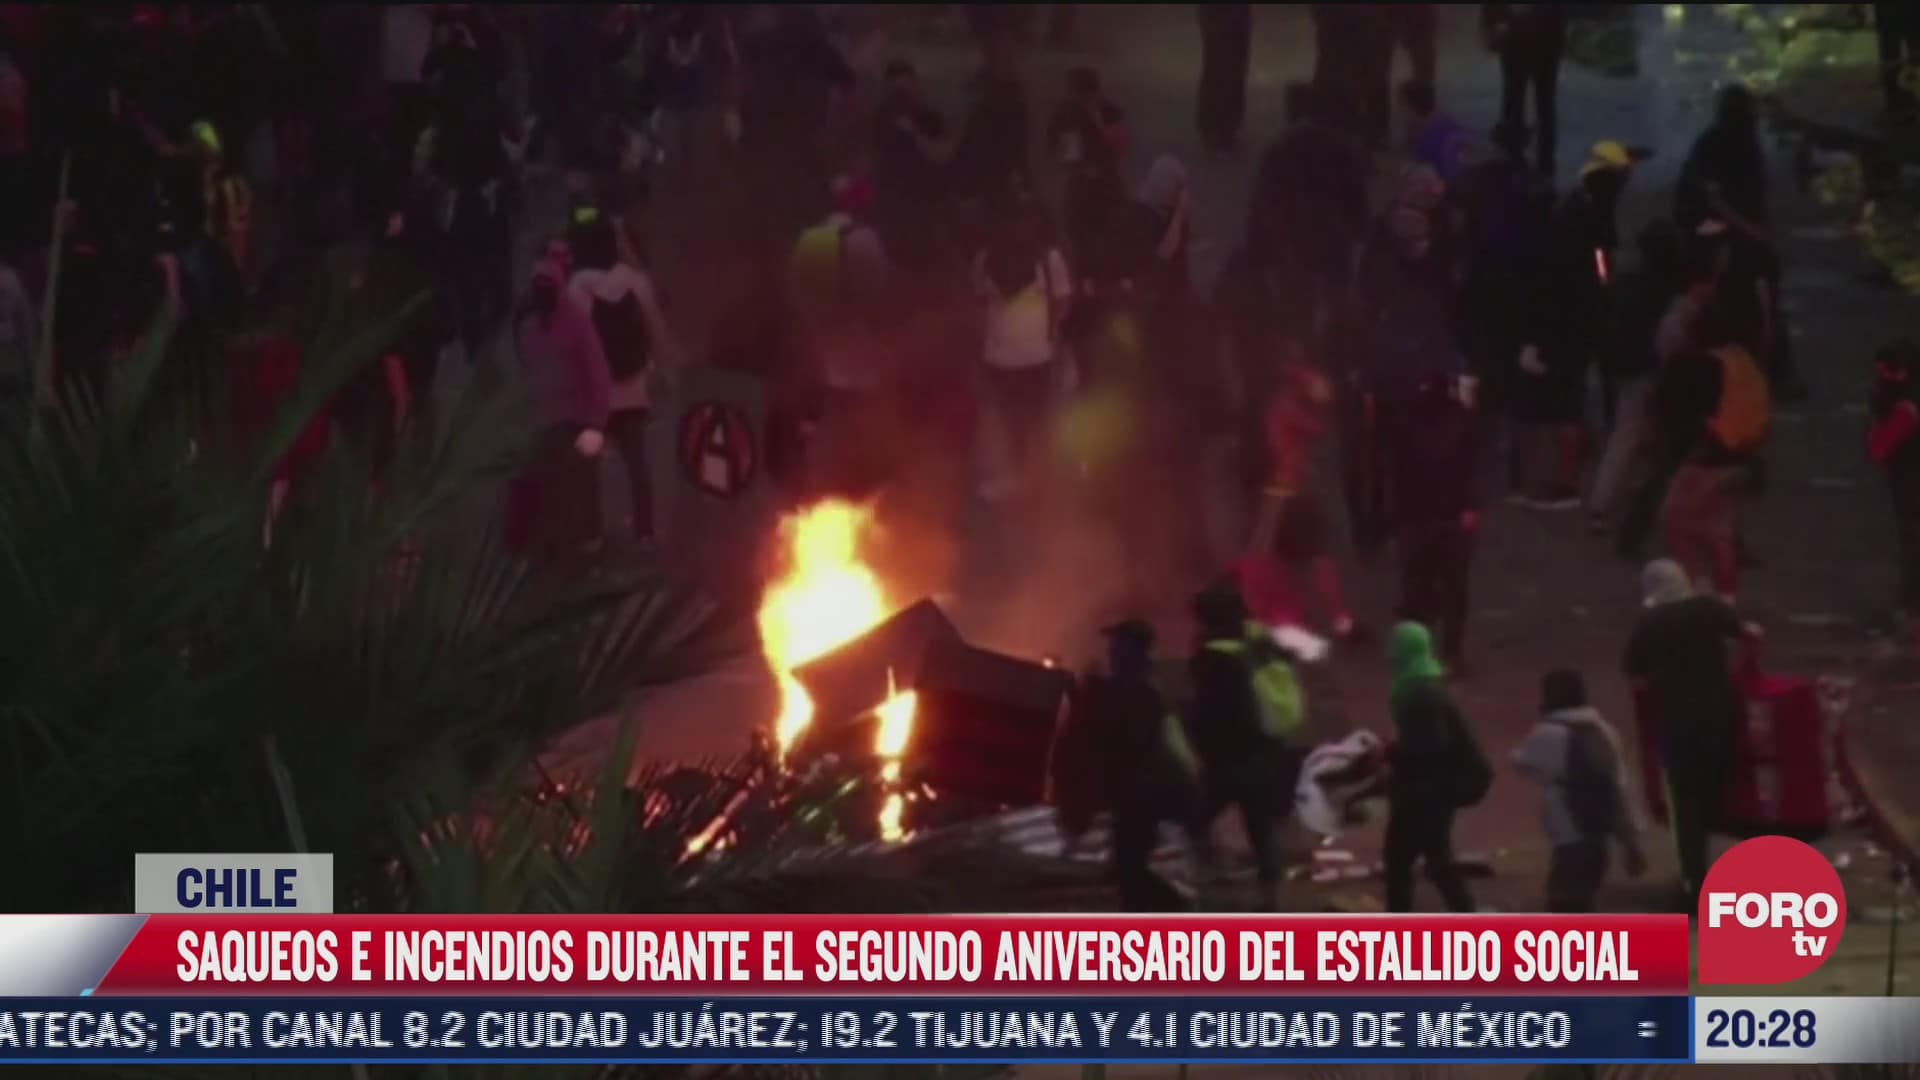 violentas protestas en chile a dos anos del estallido social